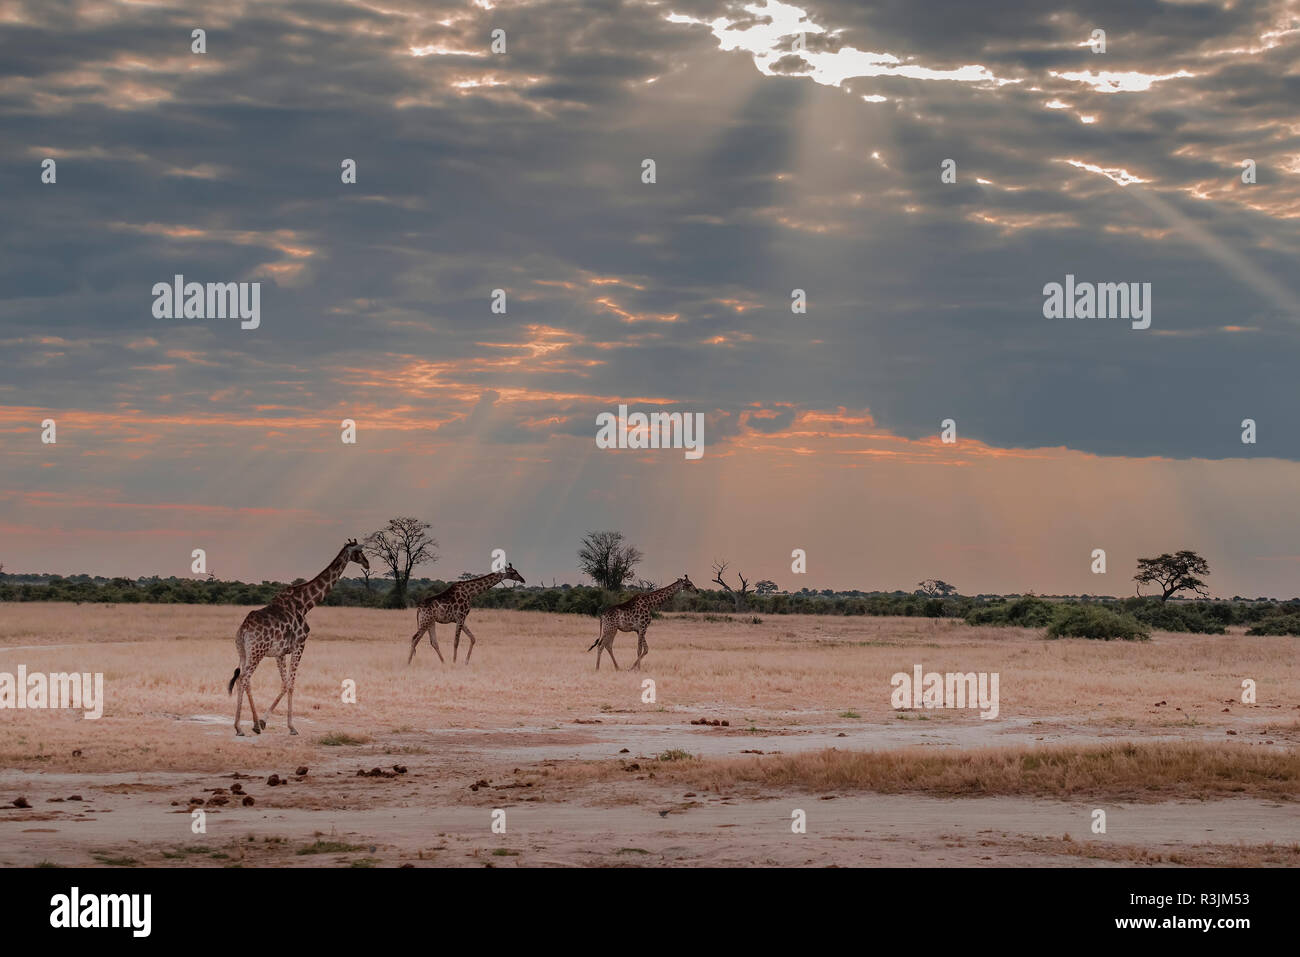 L'Afrique, Botswana, Chobe National Park. Les Girafes sur la savane. En tant que crédit : Jones & Shimlock / Jaynes Gallery / DanitaDelimont.com Banque D'Images